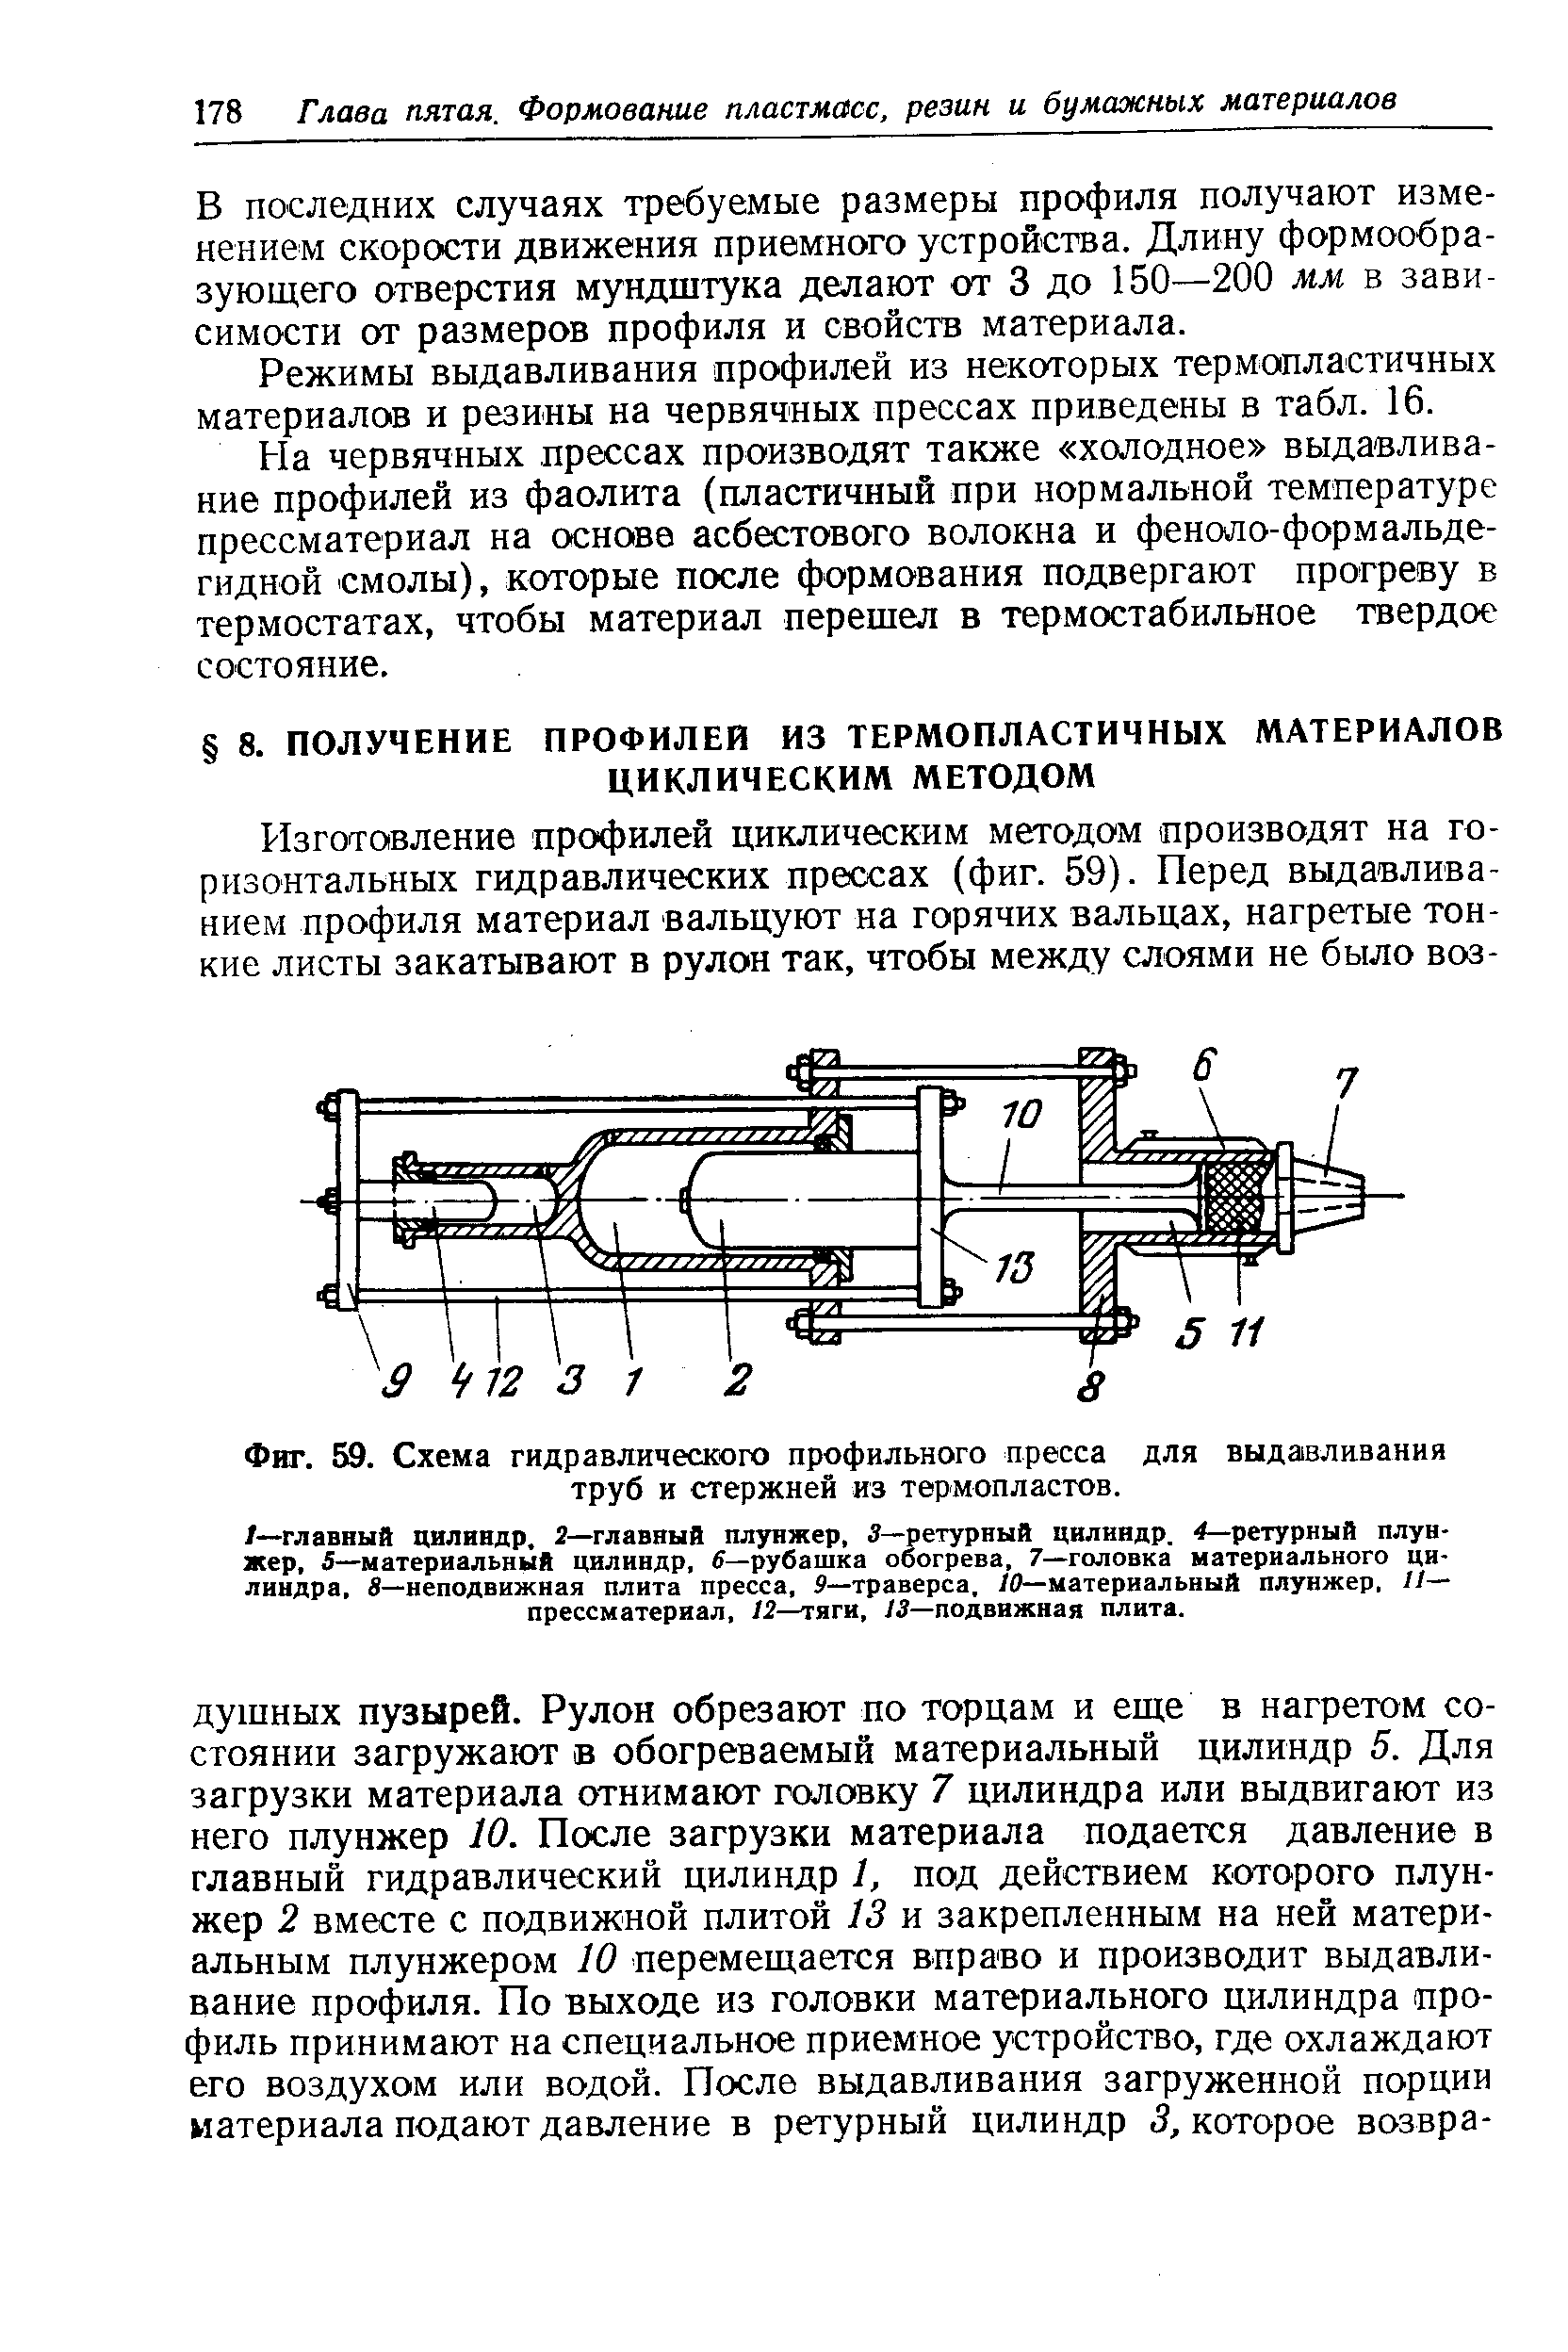 Фиг. 59. <a href="/info/4757">Схема гидравлического</a> профильного пресса для выдавливания труб и стержней из термопластов.
